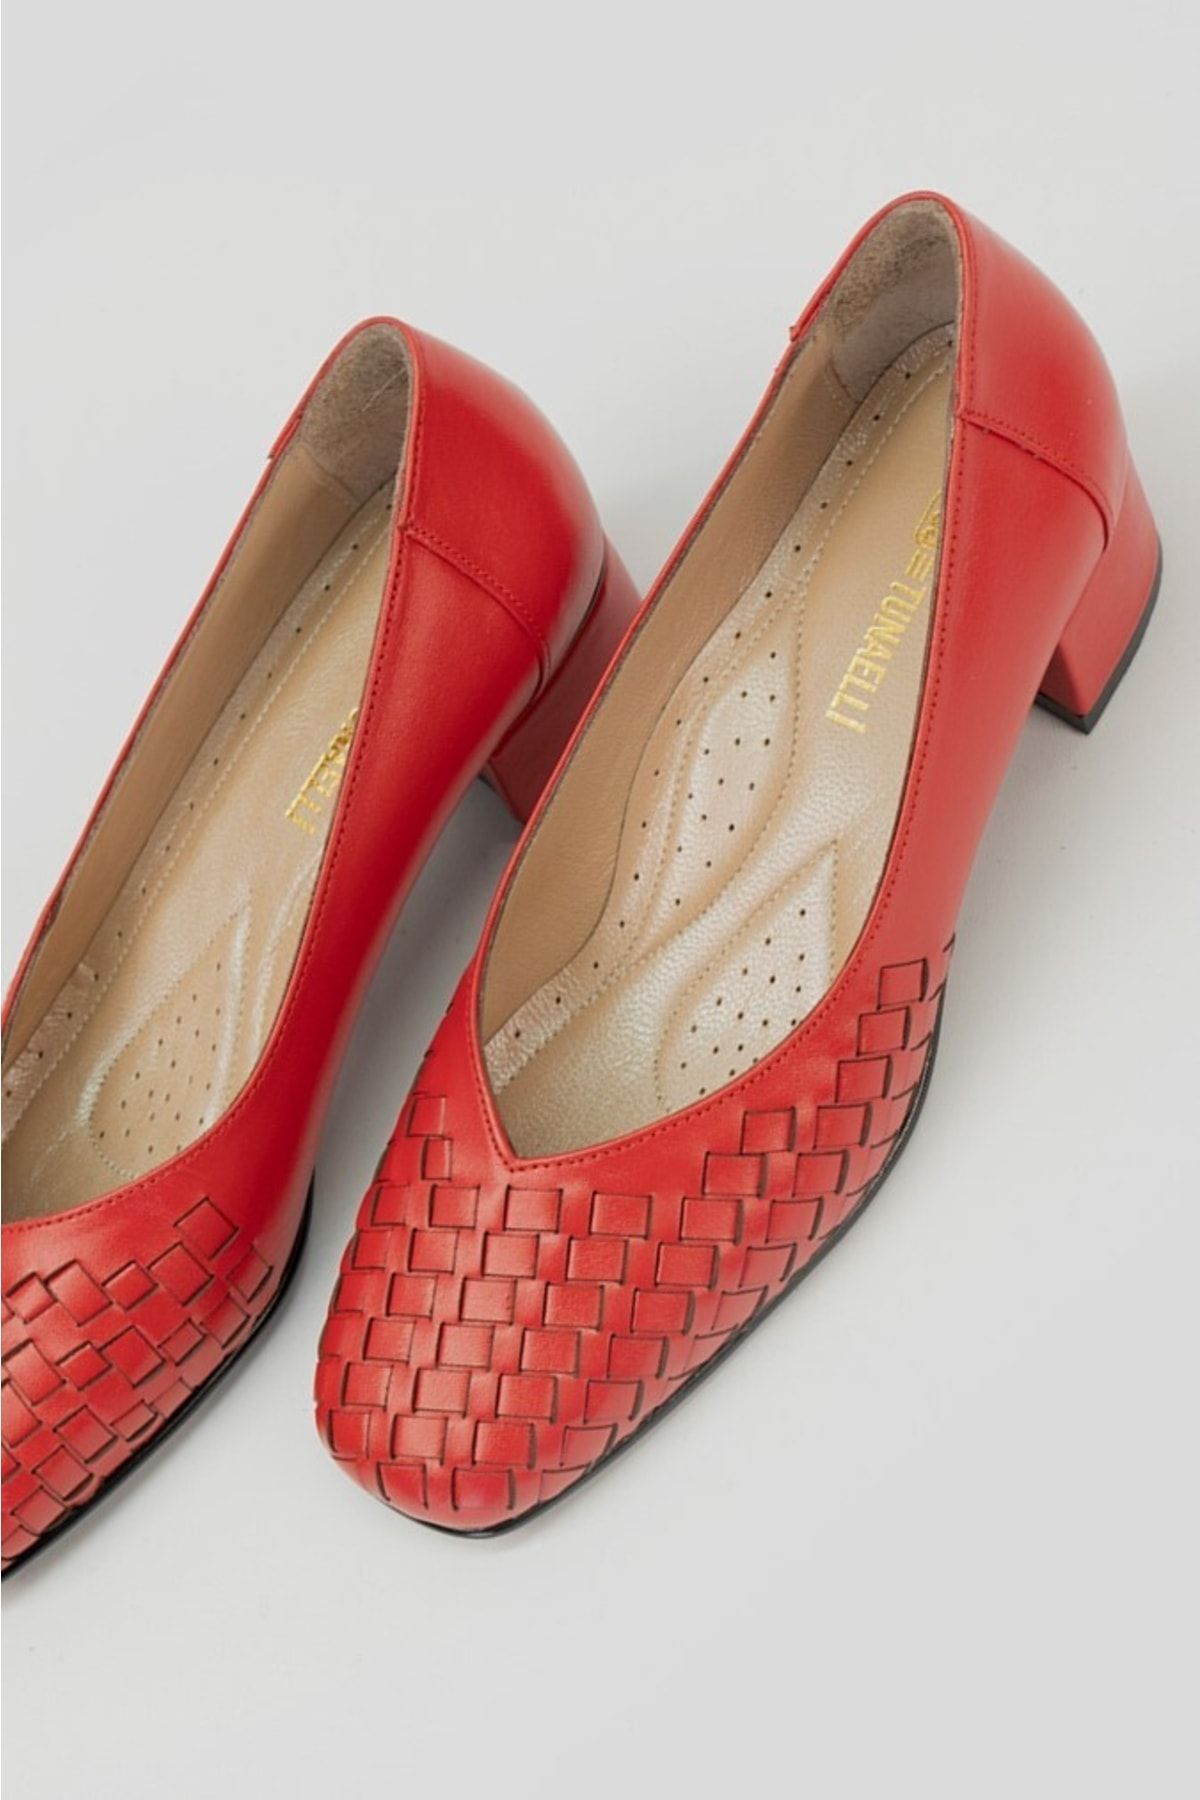 TUNAELLİ Kadın Kırmızı Örgülü Hakiki Deri 35-41 Numara Topuklu Ayakkabı